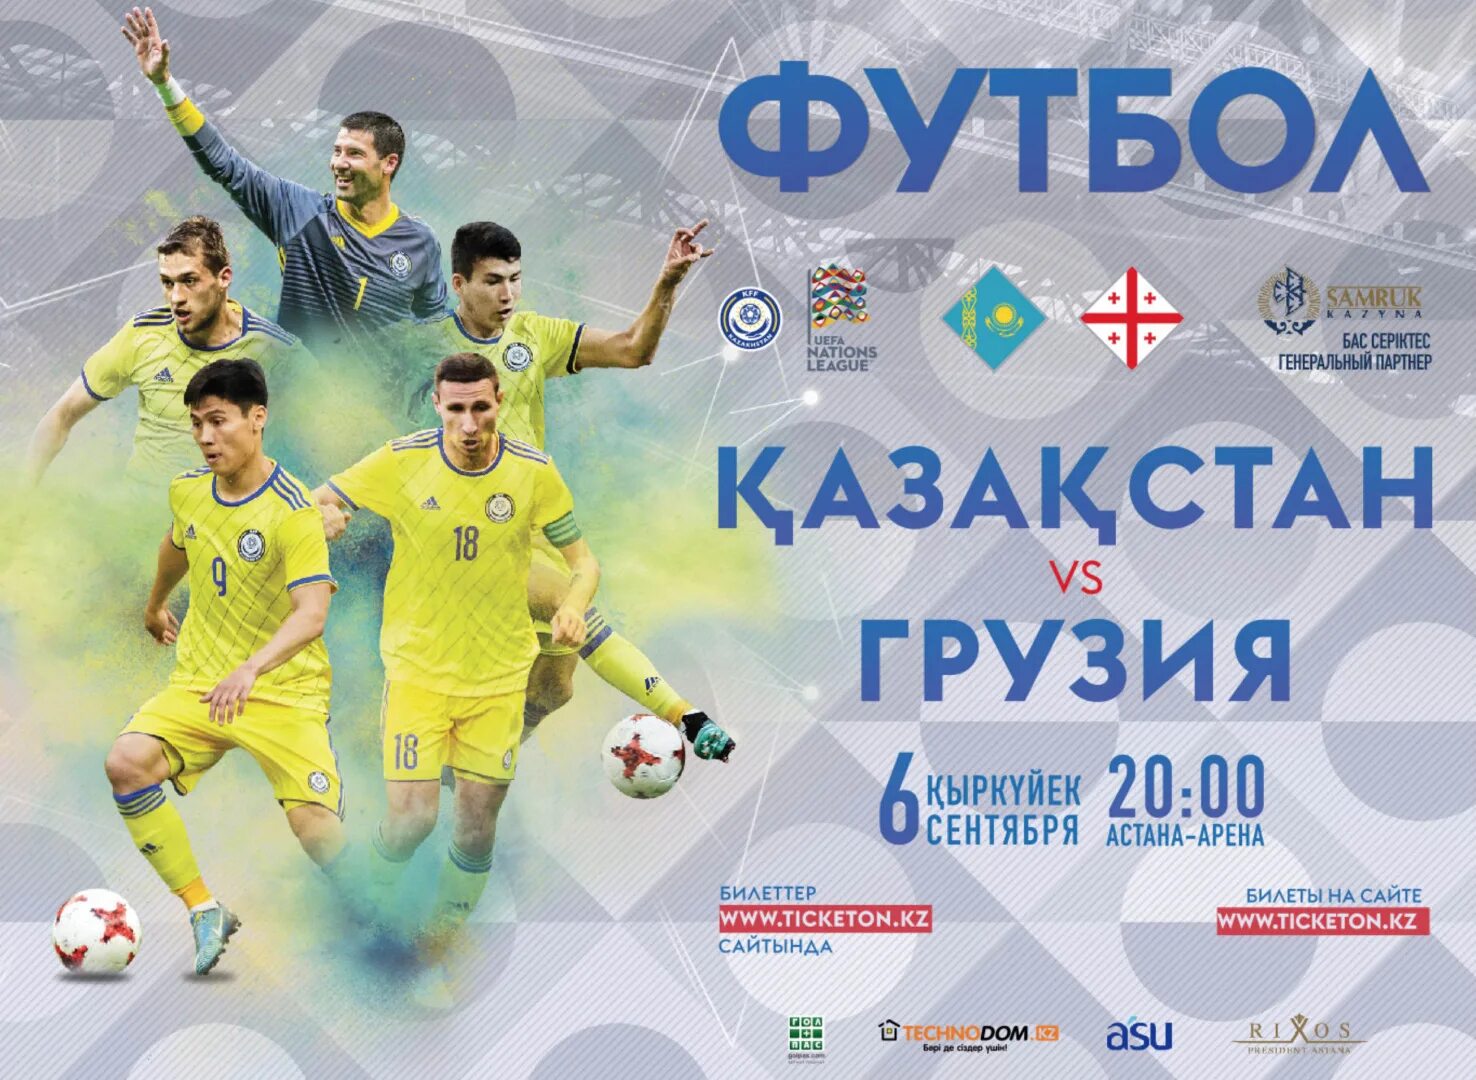 Билет на футбол. Грузия Казахстан билеты. Логотип сборной Казахстана. Билет на спортивное мероприятие.